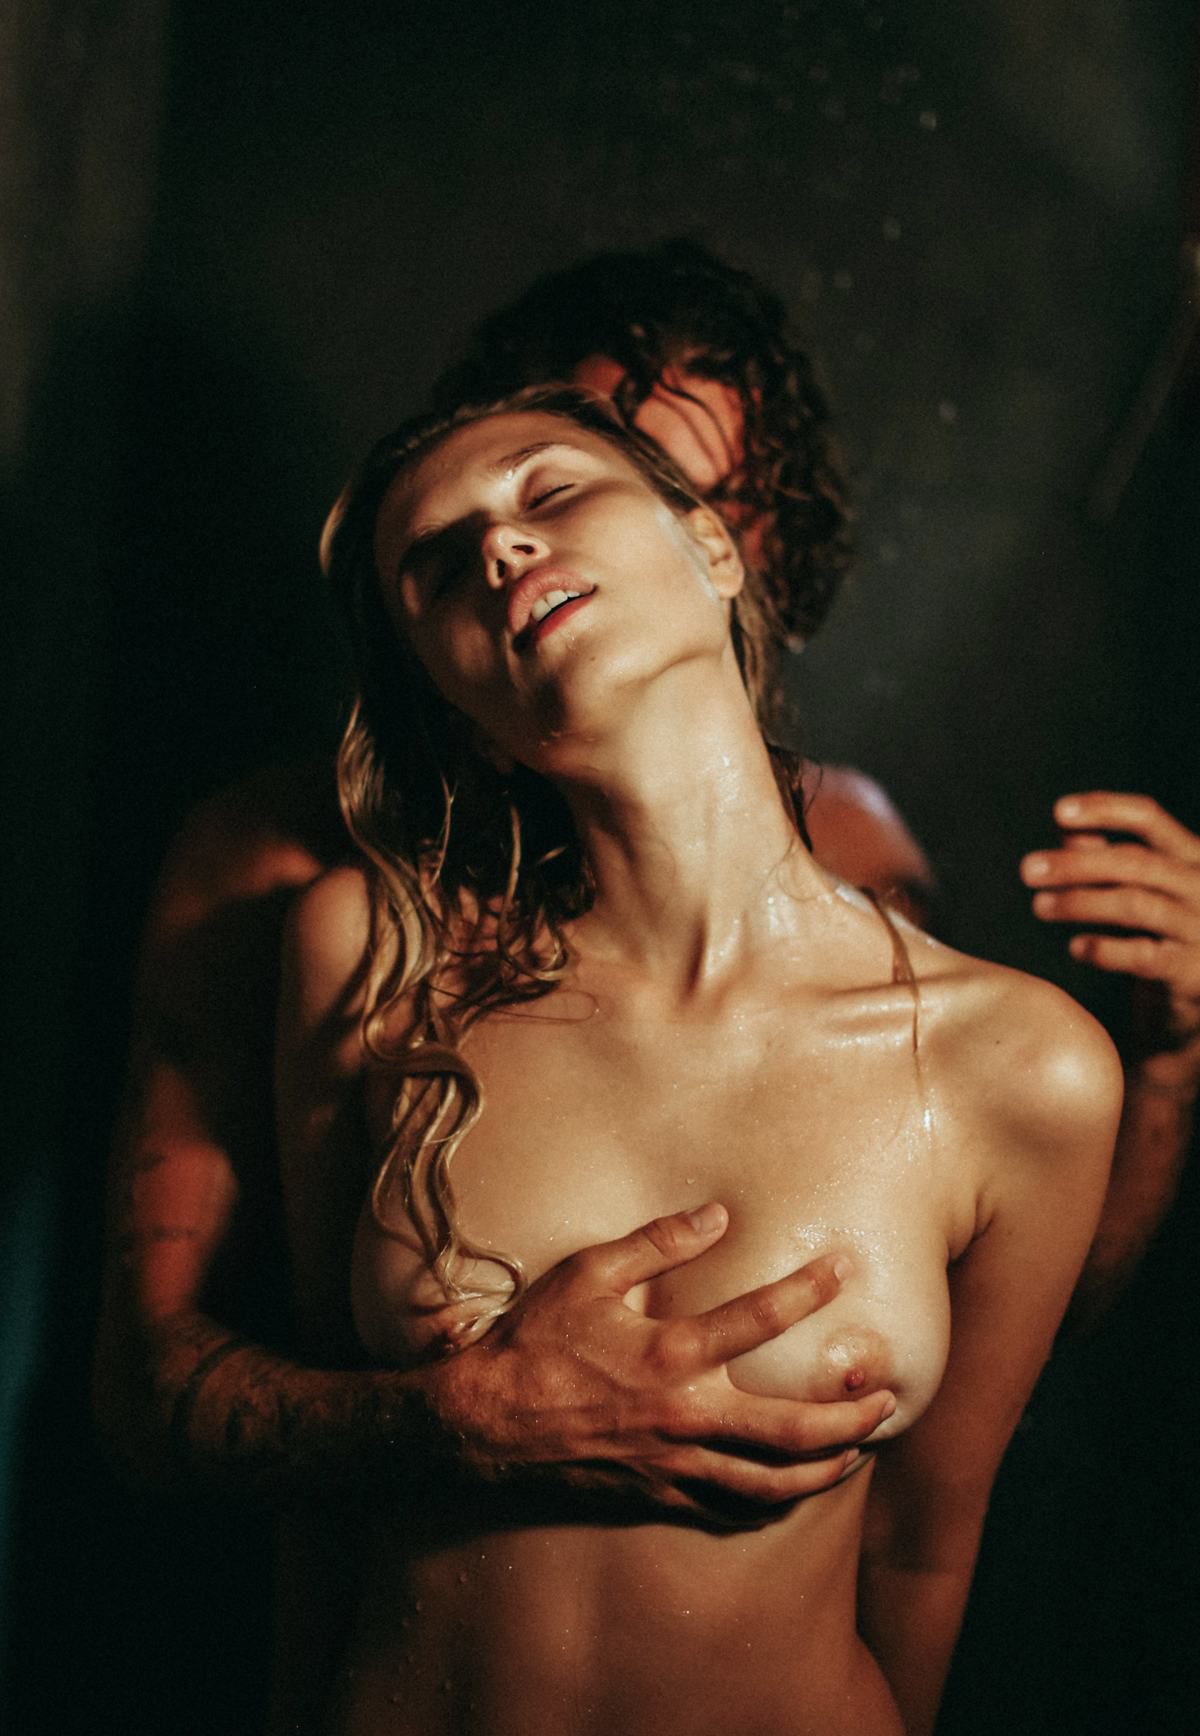 Polina Malinovskaya Naked - Hot Celebs Home.